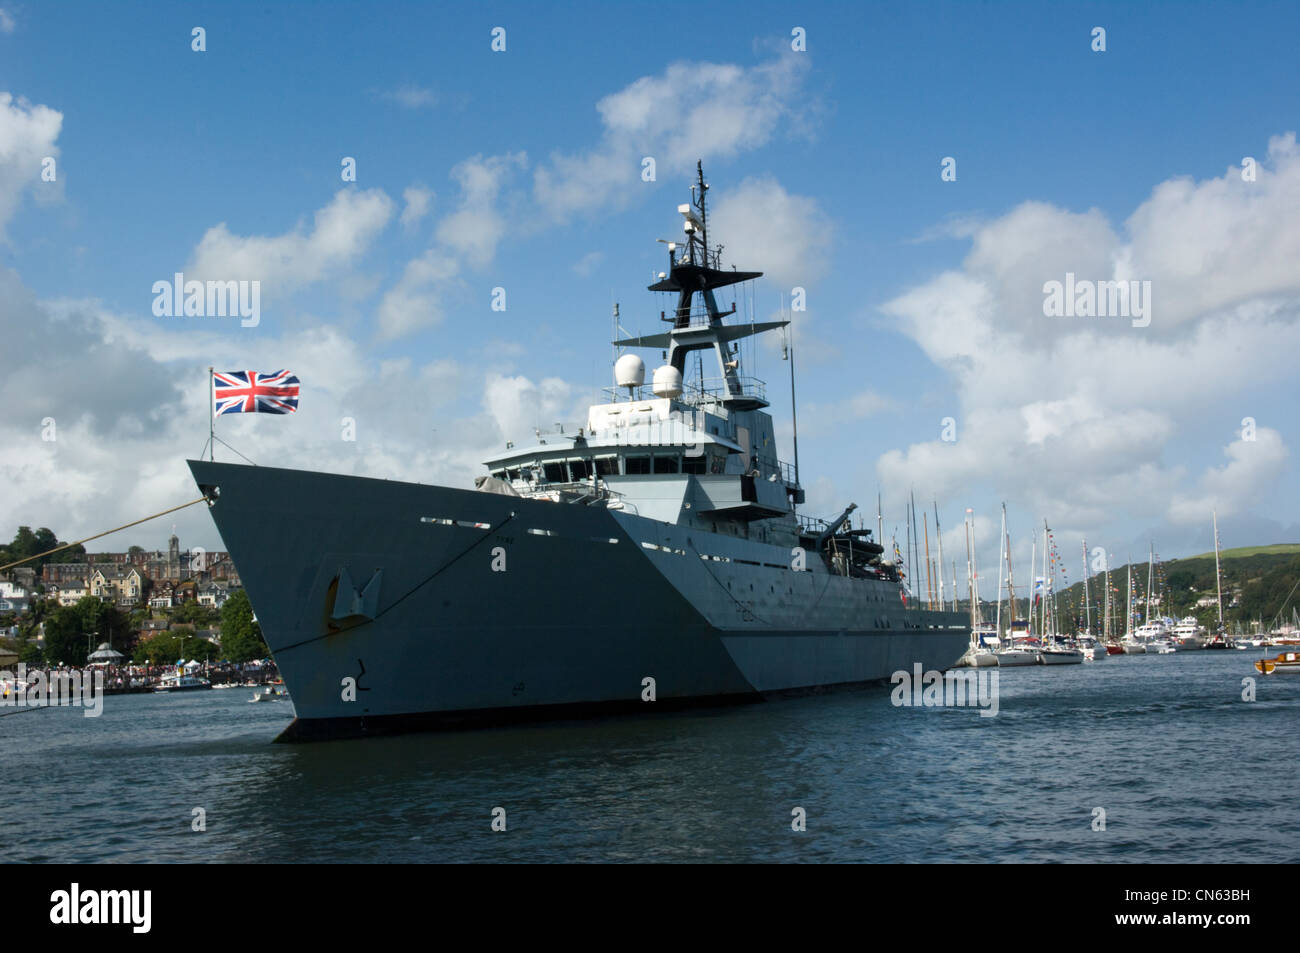 Classe River, des patrouilles de la Royal Navy HMS Tyne (P281) prend une place de choix sur la rivière Dart de Dartmouth Regatta Banque D'Images